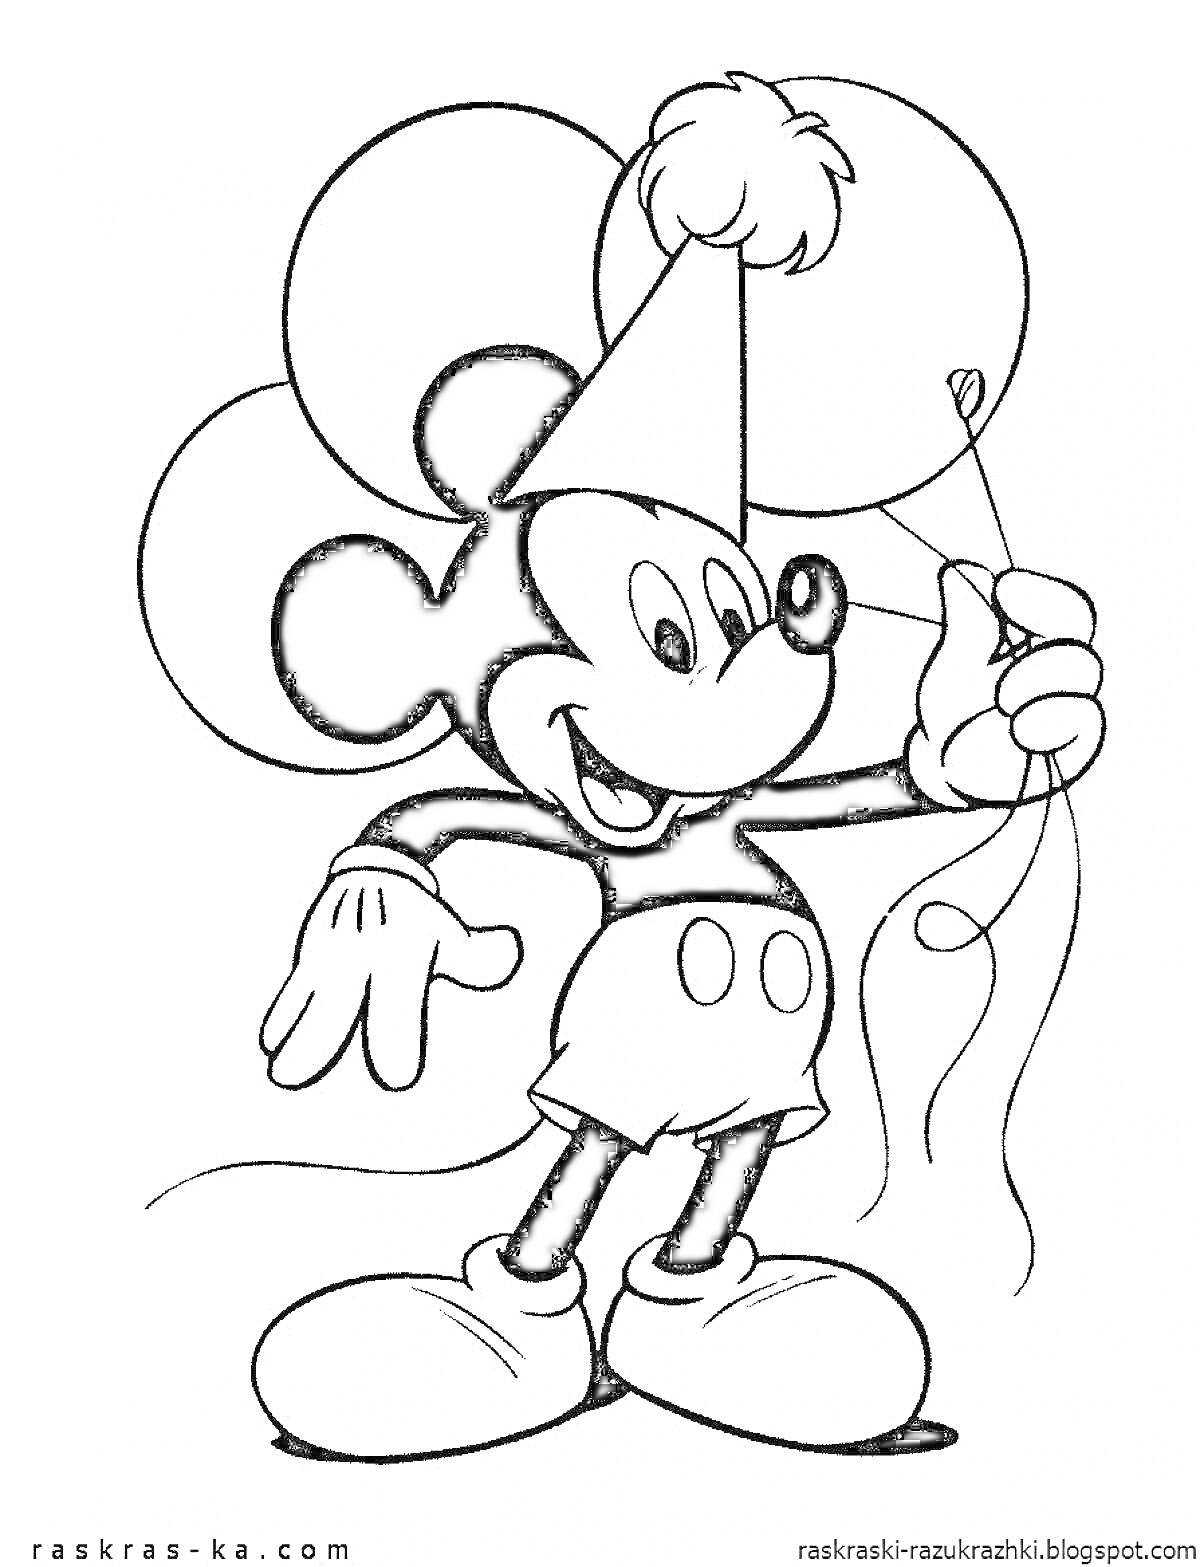 Раскраска Микки Маус в праздничной шапке с воздушными шариками